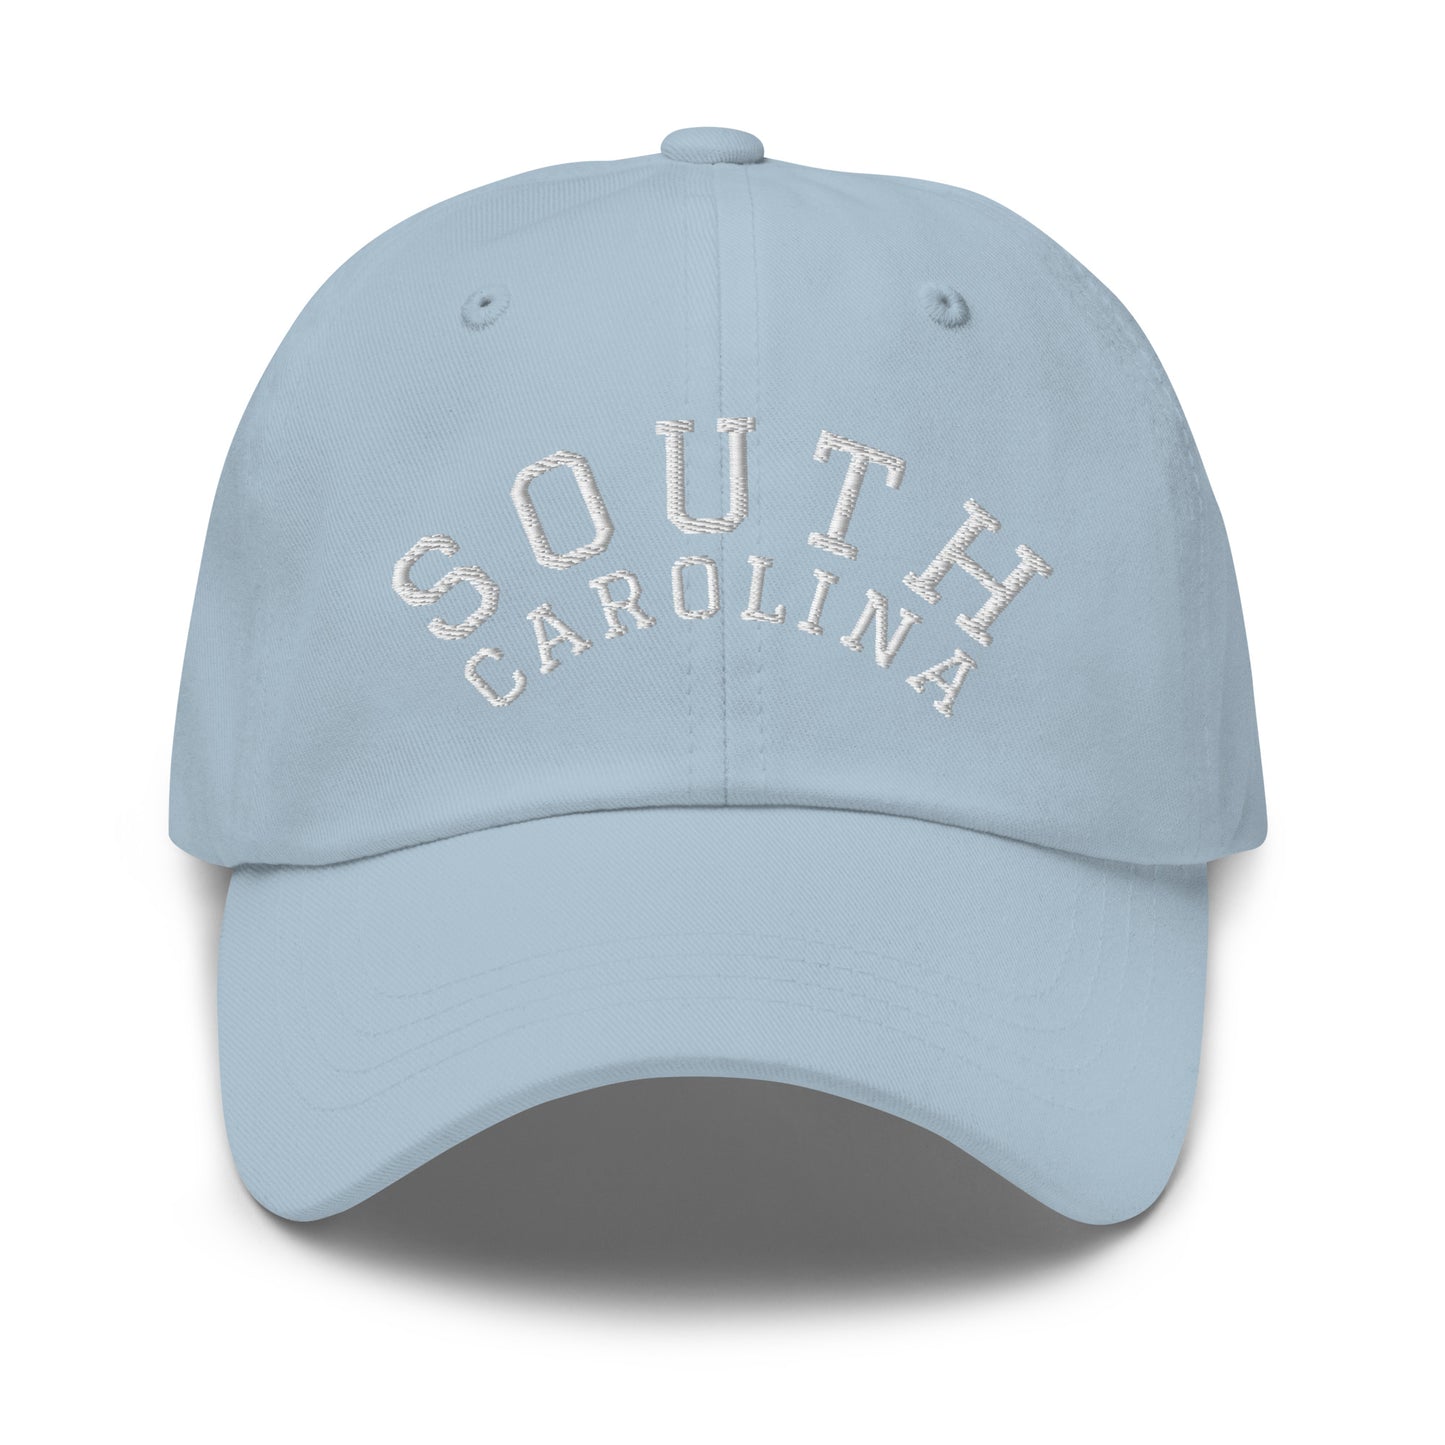 South Carolina Arch Dad Hat